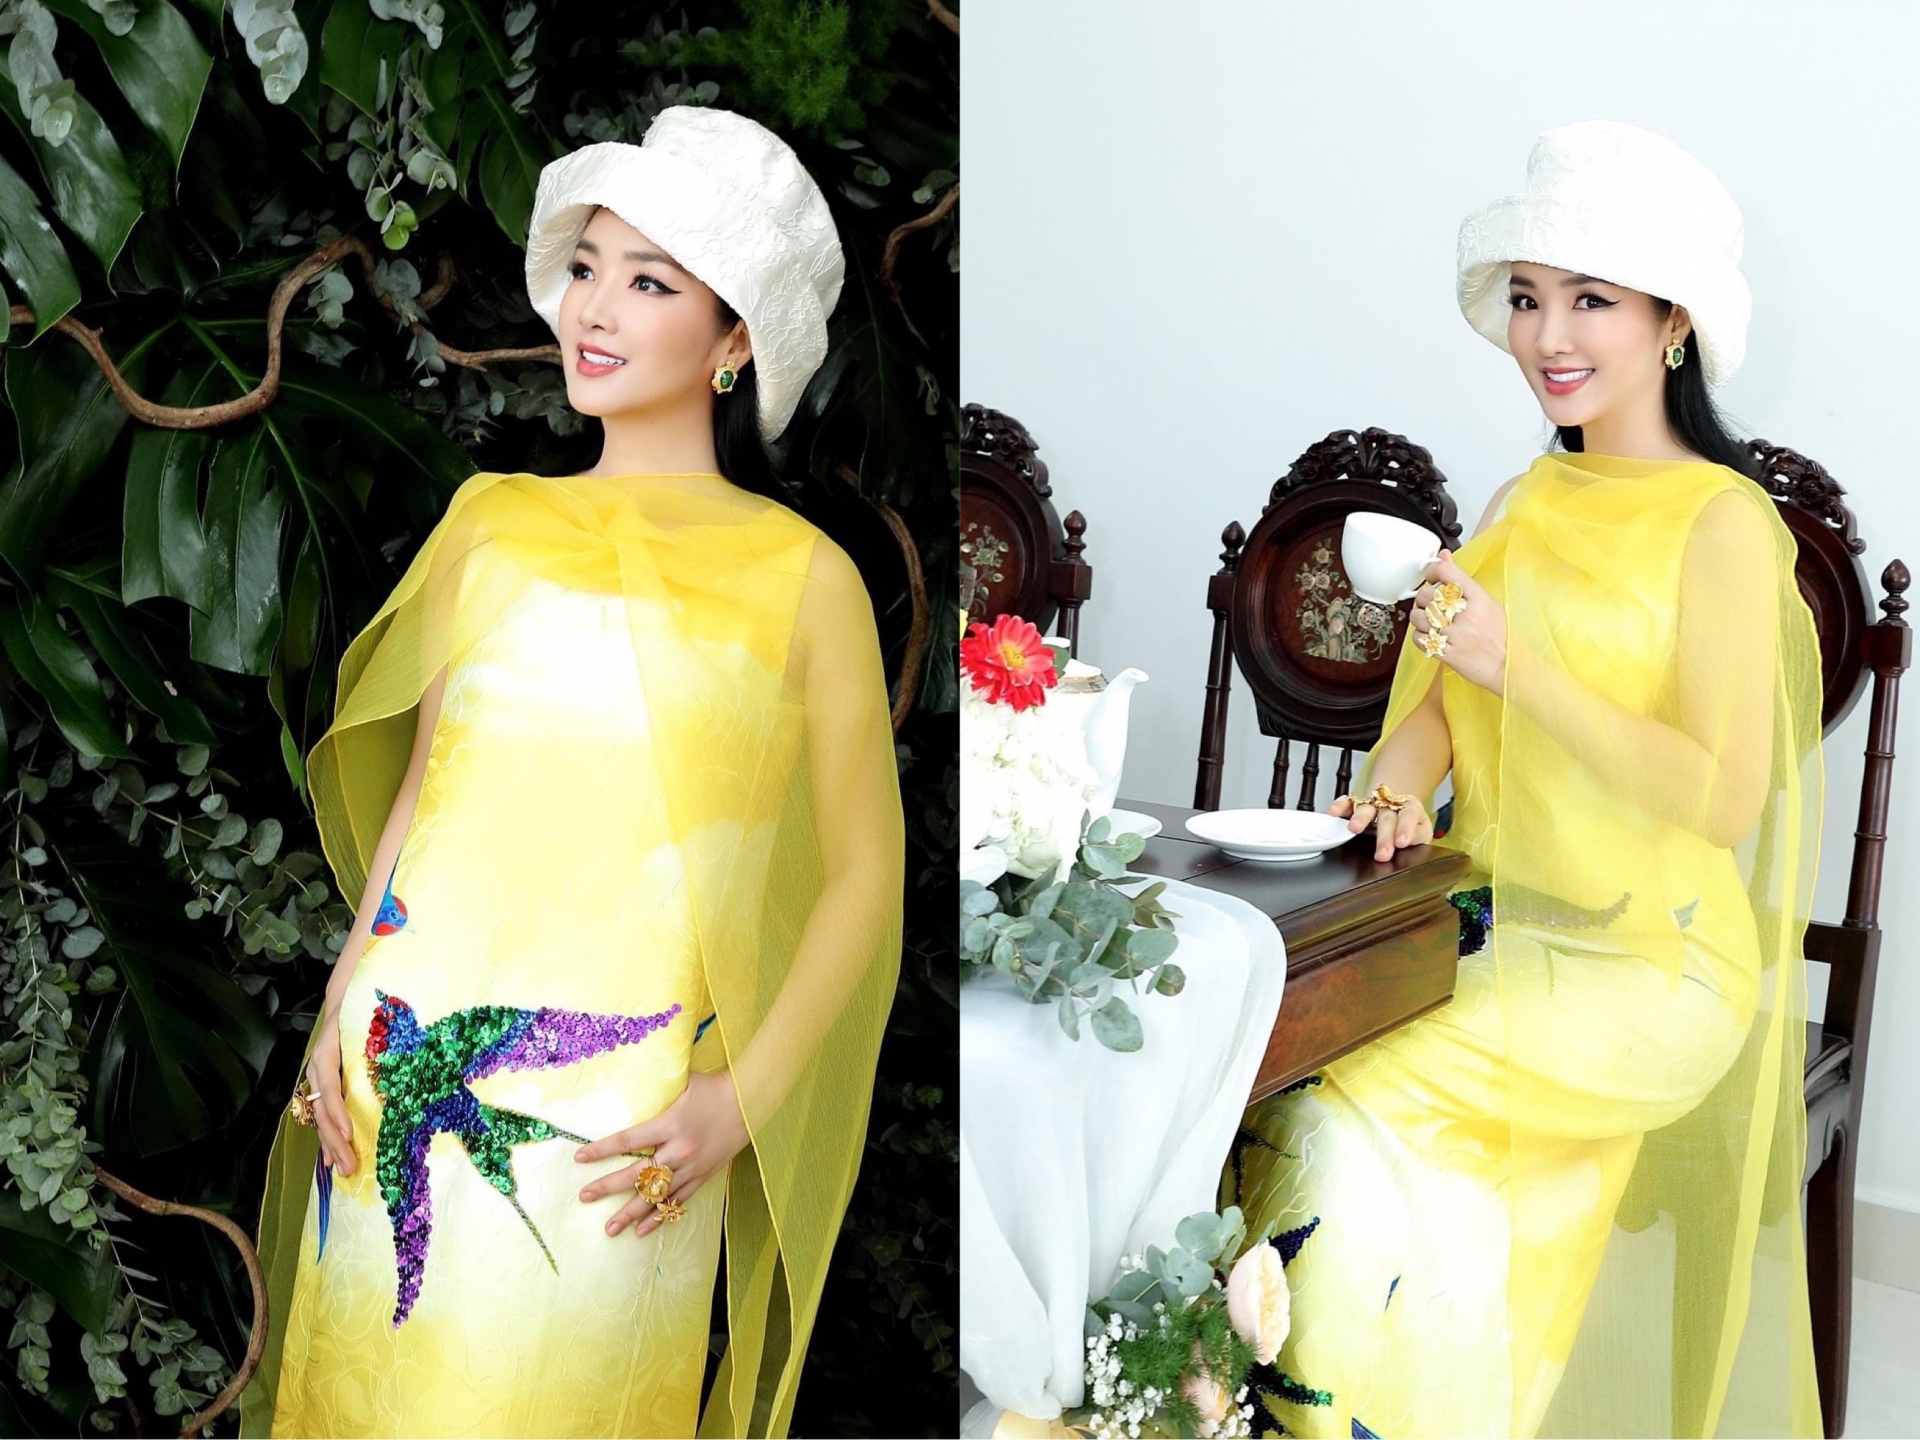 Hoa hậu Giáng My khiến netizen trầm trồ với nhan sắc trẻ đẹp 'không tì vết' ở tuổi 50. Cô chọn một bộ trang phục cực bắt mắt, toát lên khí chất sang chảnh và giàu có.